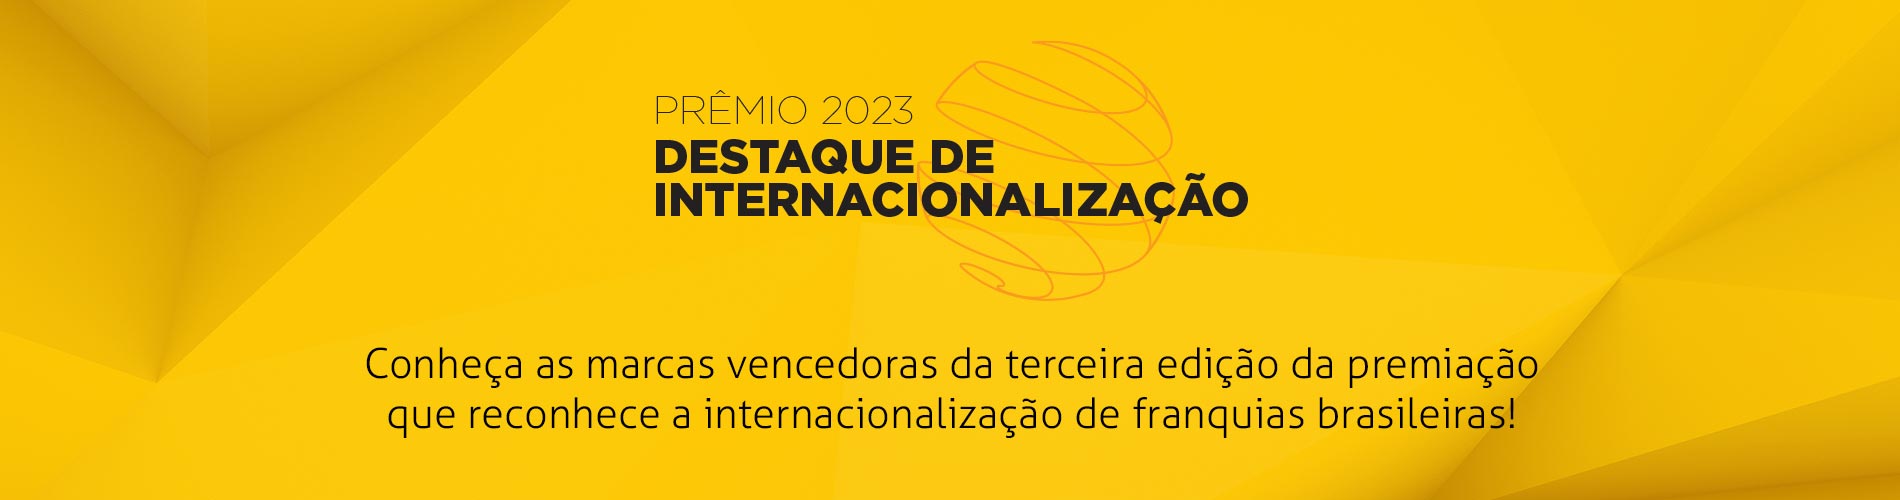 premio-2023-destaque-de-internacionalizacao-portugues